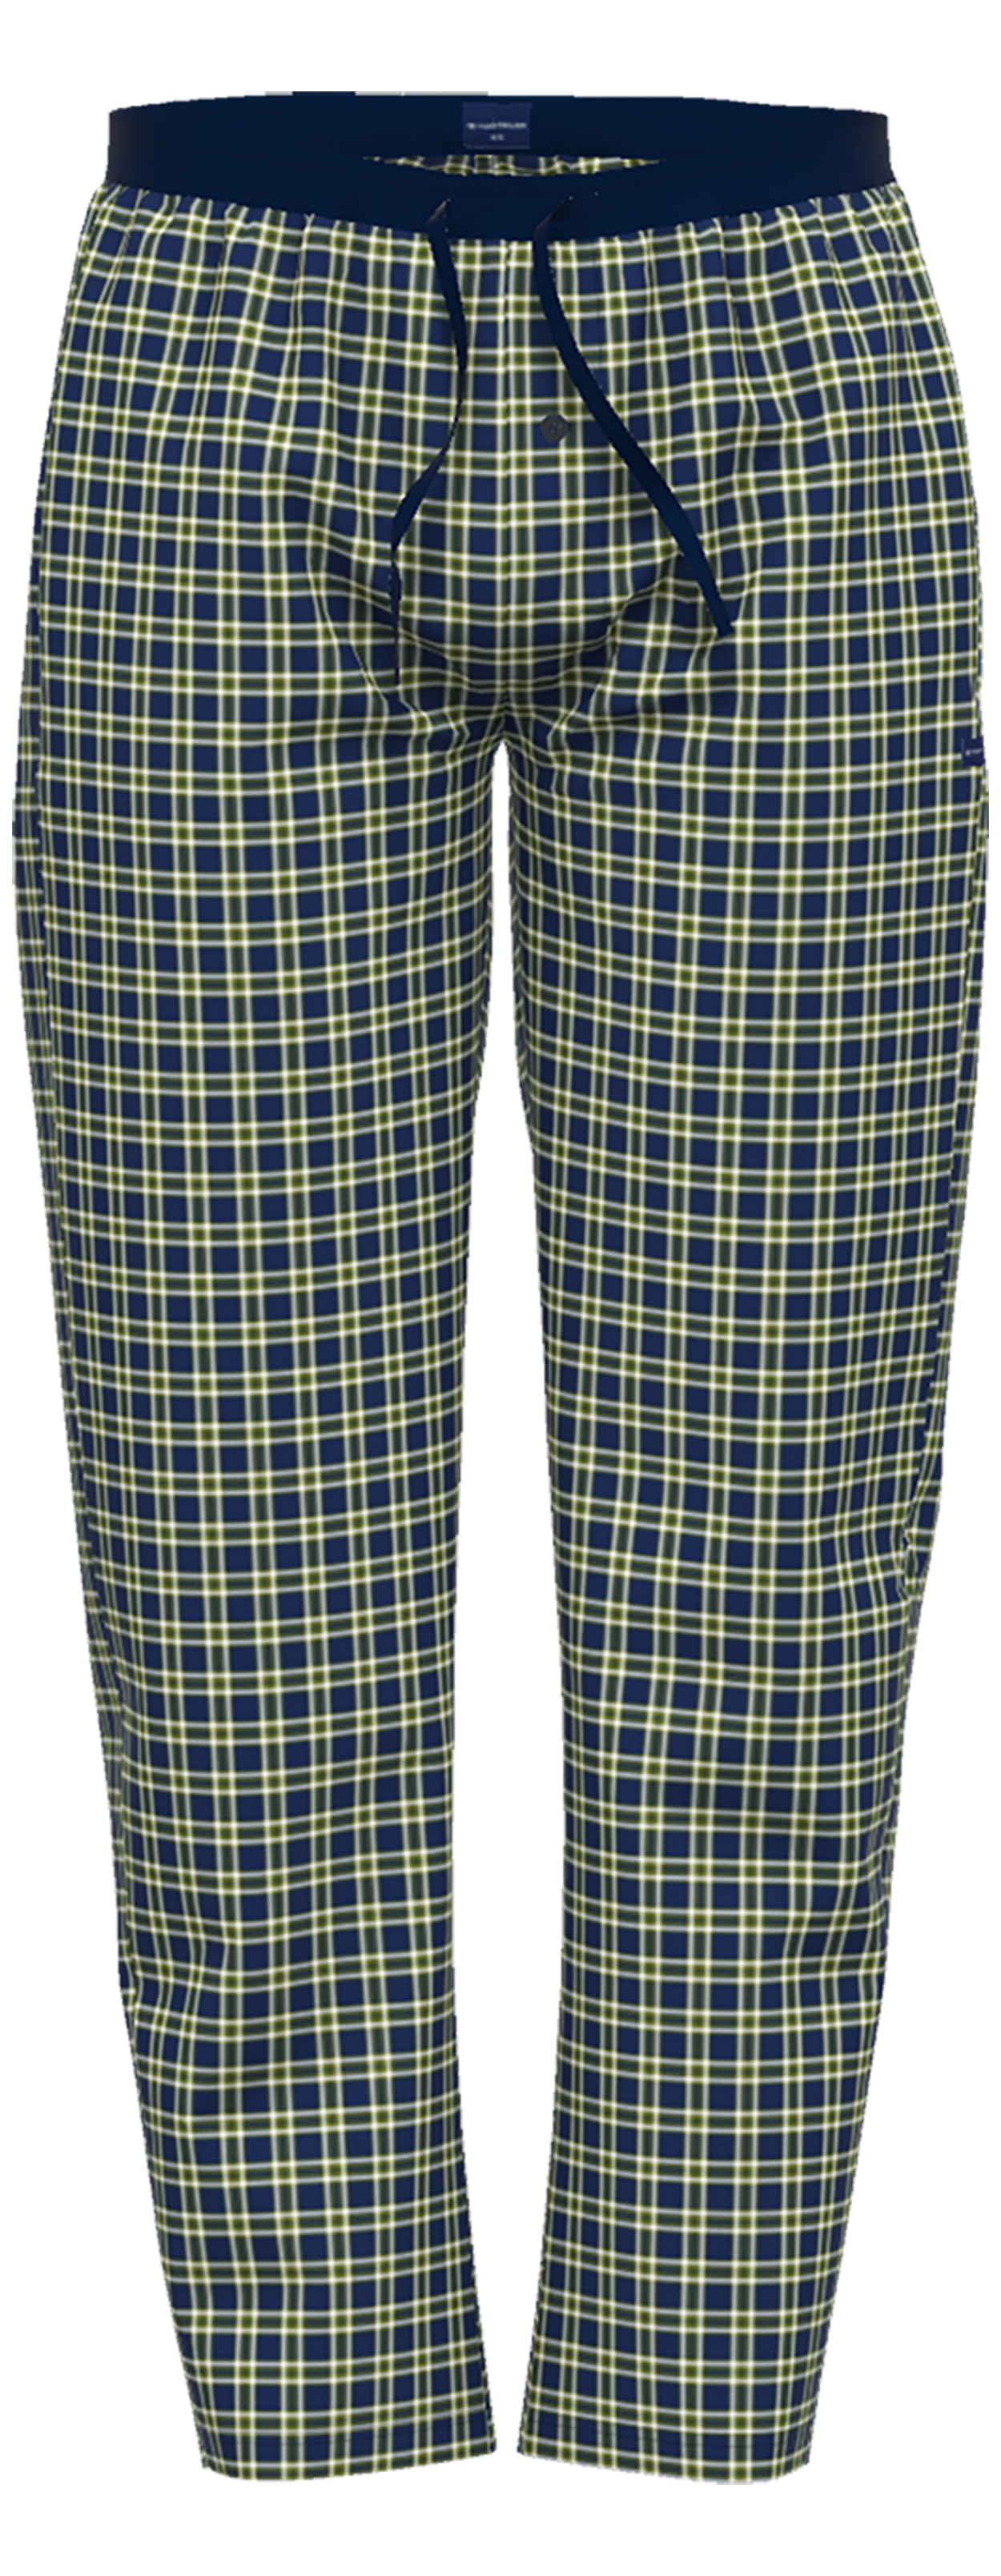 pantalon pyjama tom tailor en coton à carreaux sur fond marine, taille élastiquée